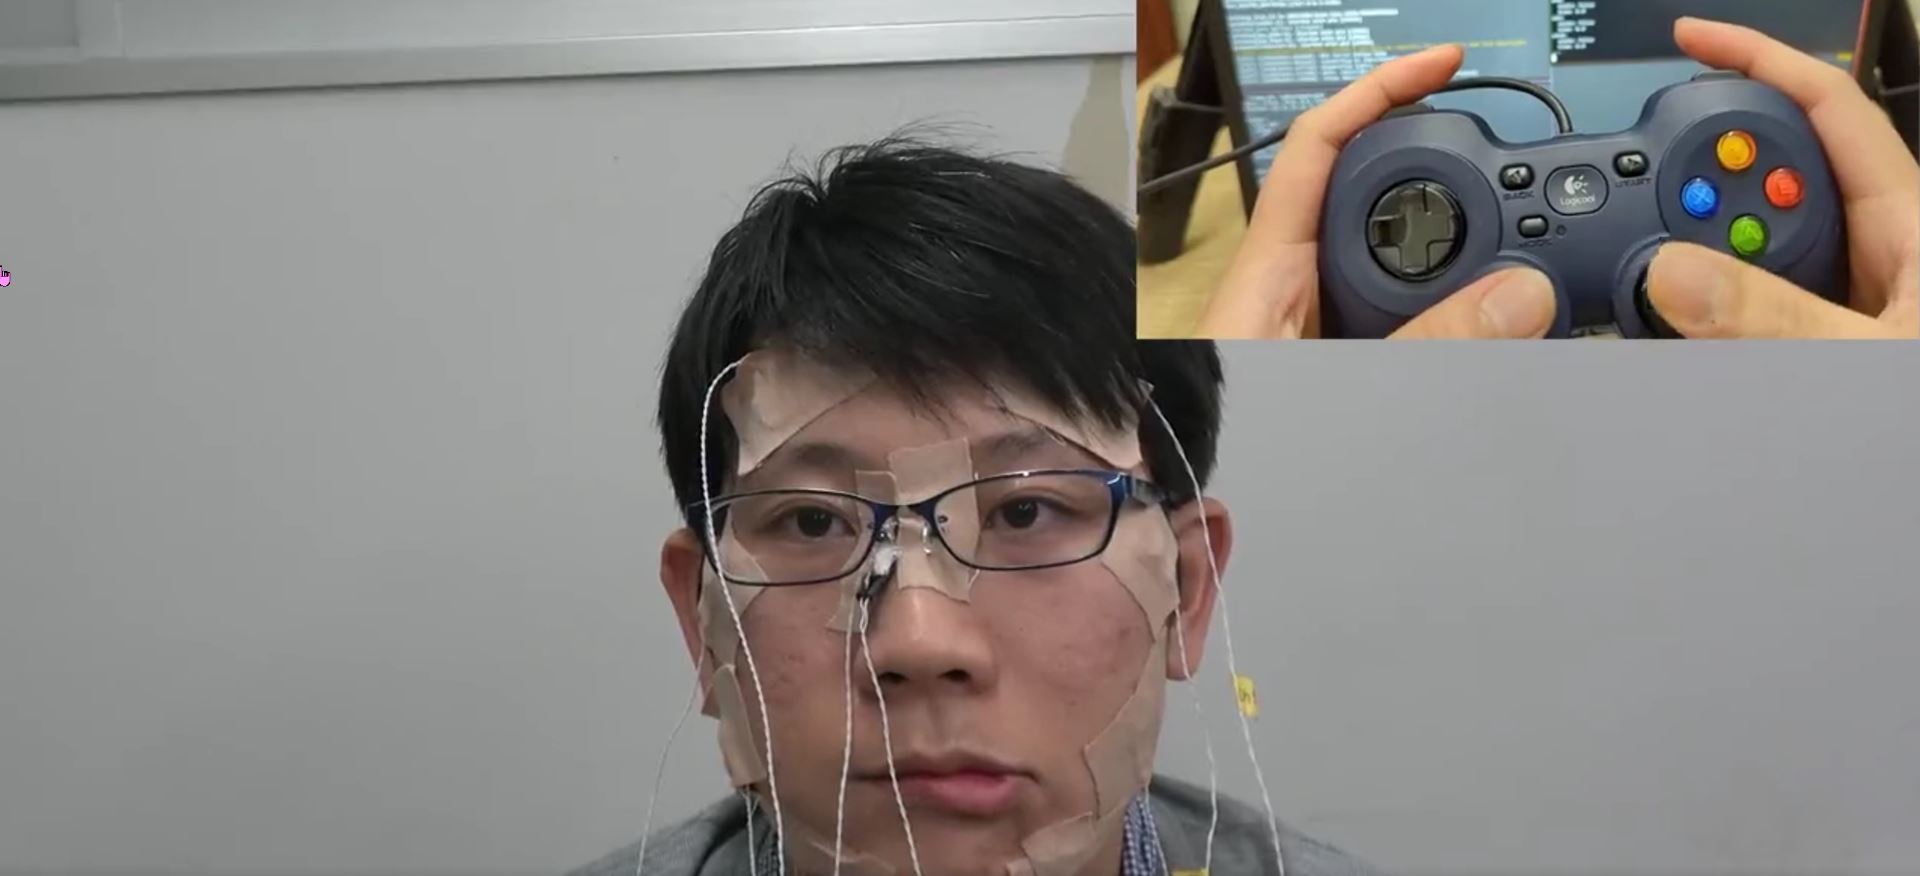 日本網友發明用遊戲控制器操控臉部各部位肌肉的裝置 - 電腦王阿達